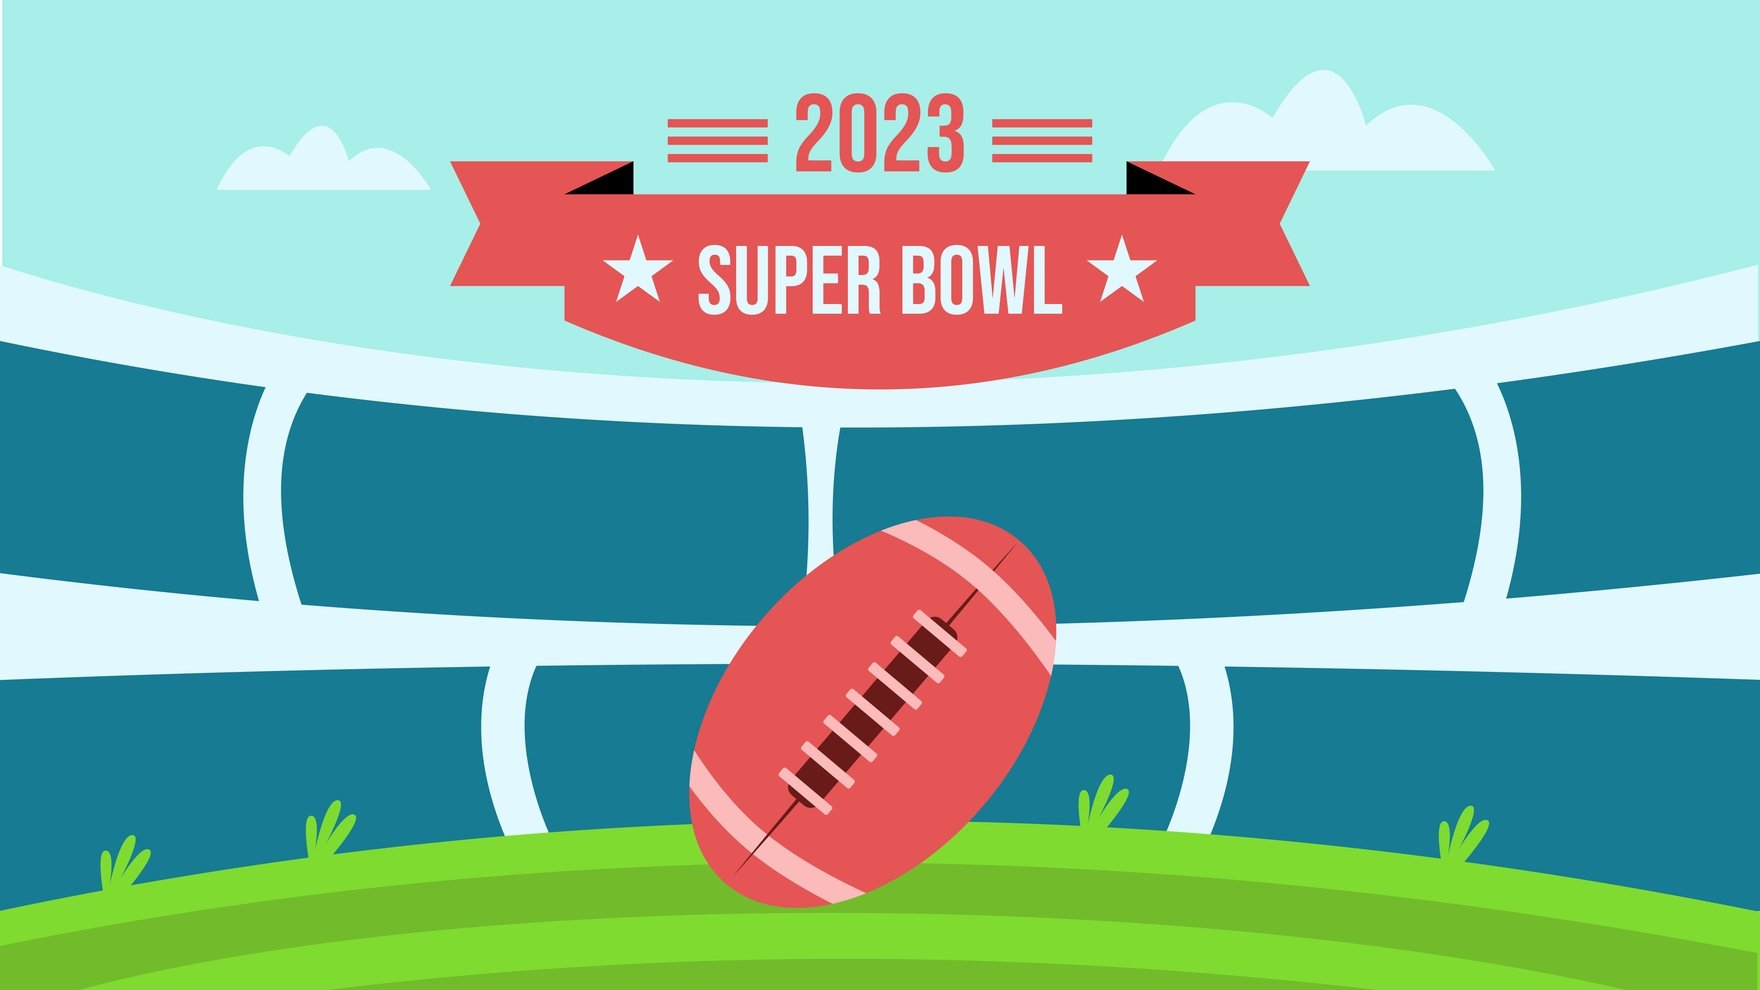 Free Super Bowl 2023 Background in PDF, Illustrator, PSD, EPS, SVG, JPG, PNG